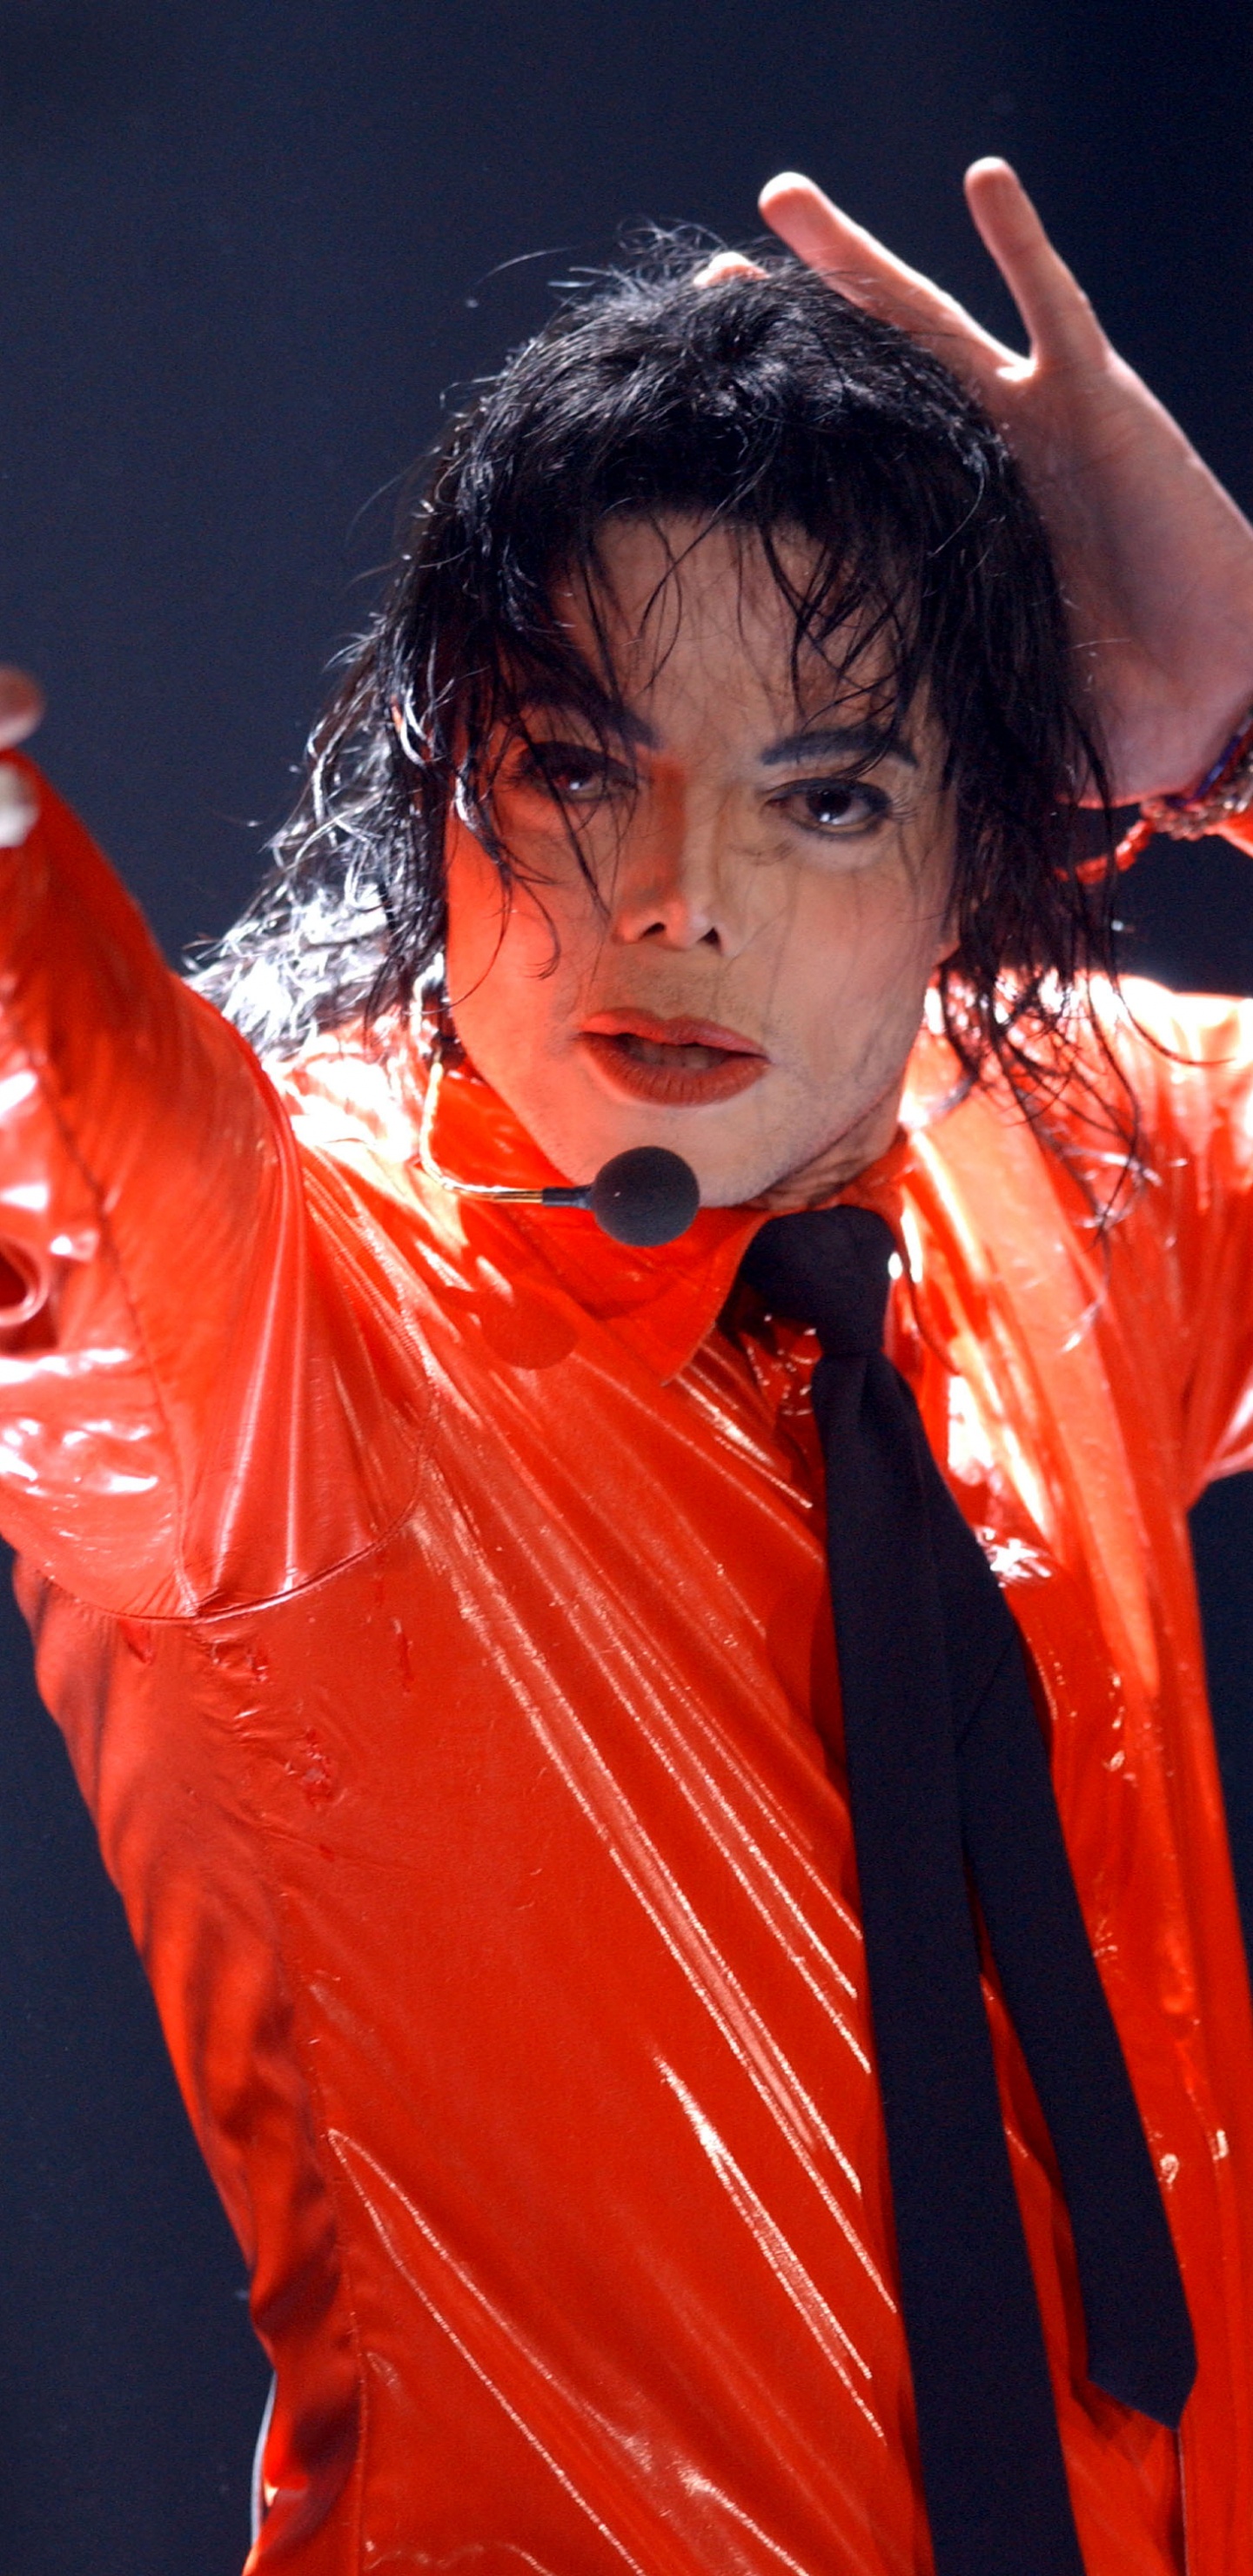 迈克尔*杰克逊, 性能, 红色的, 歌手, 额头 壁纸 1440x2960 允许